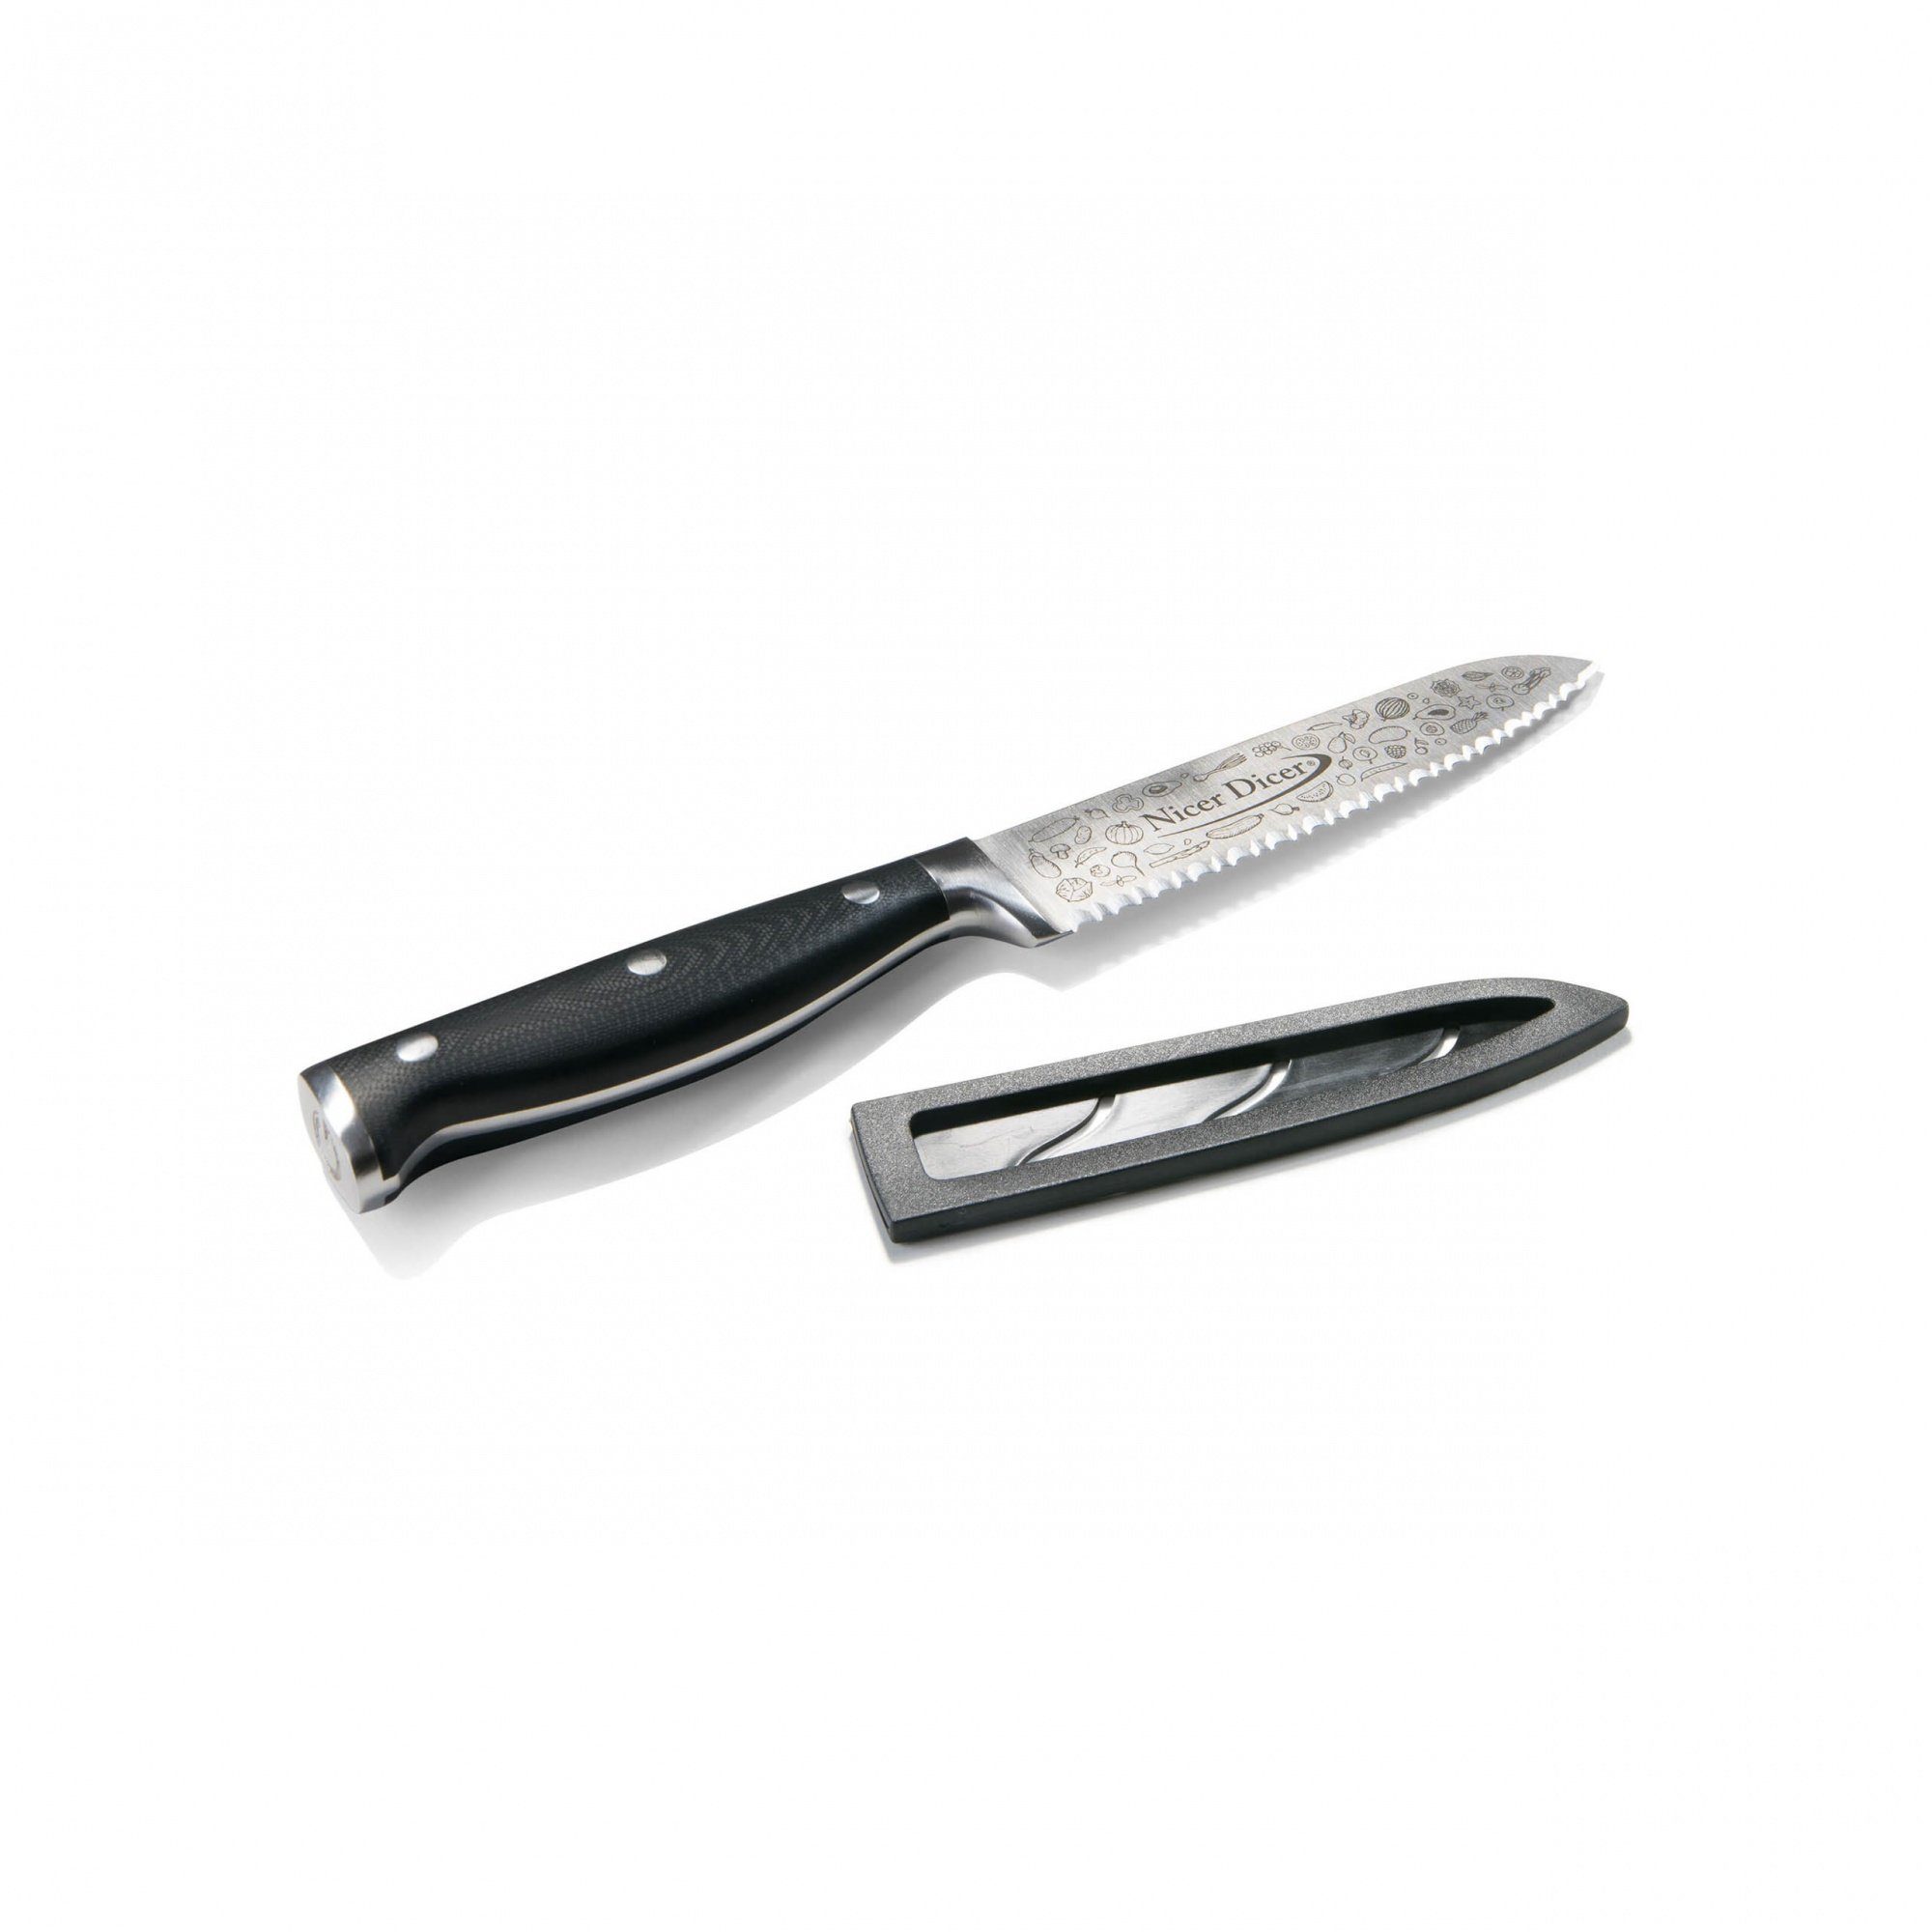 Genius Universalmesser Nicer Dicer Knife, Professional Allzweckmesser (13 cm), aus Edelstahl mit Wellenschnitt